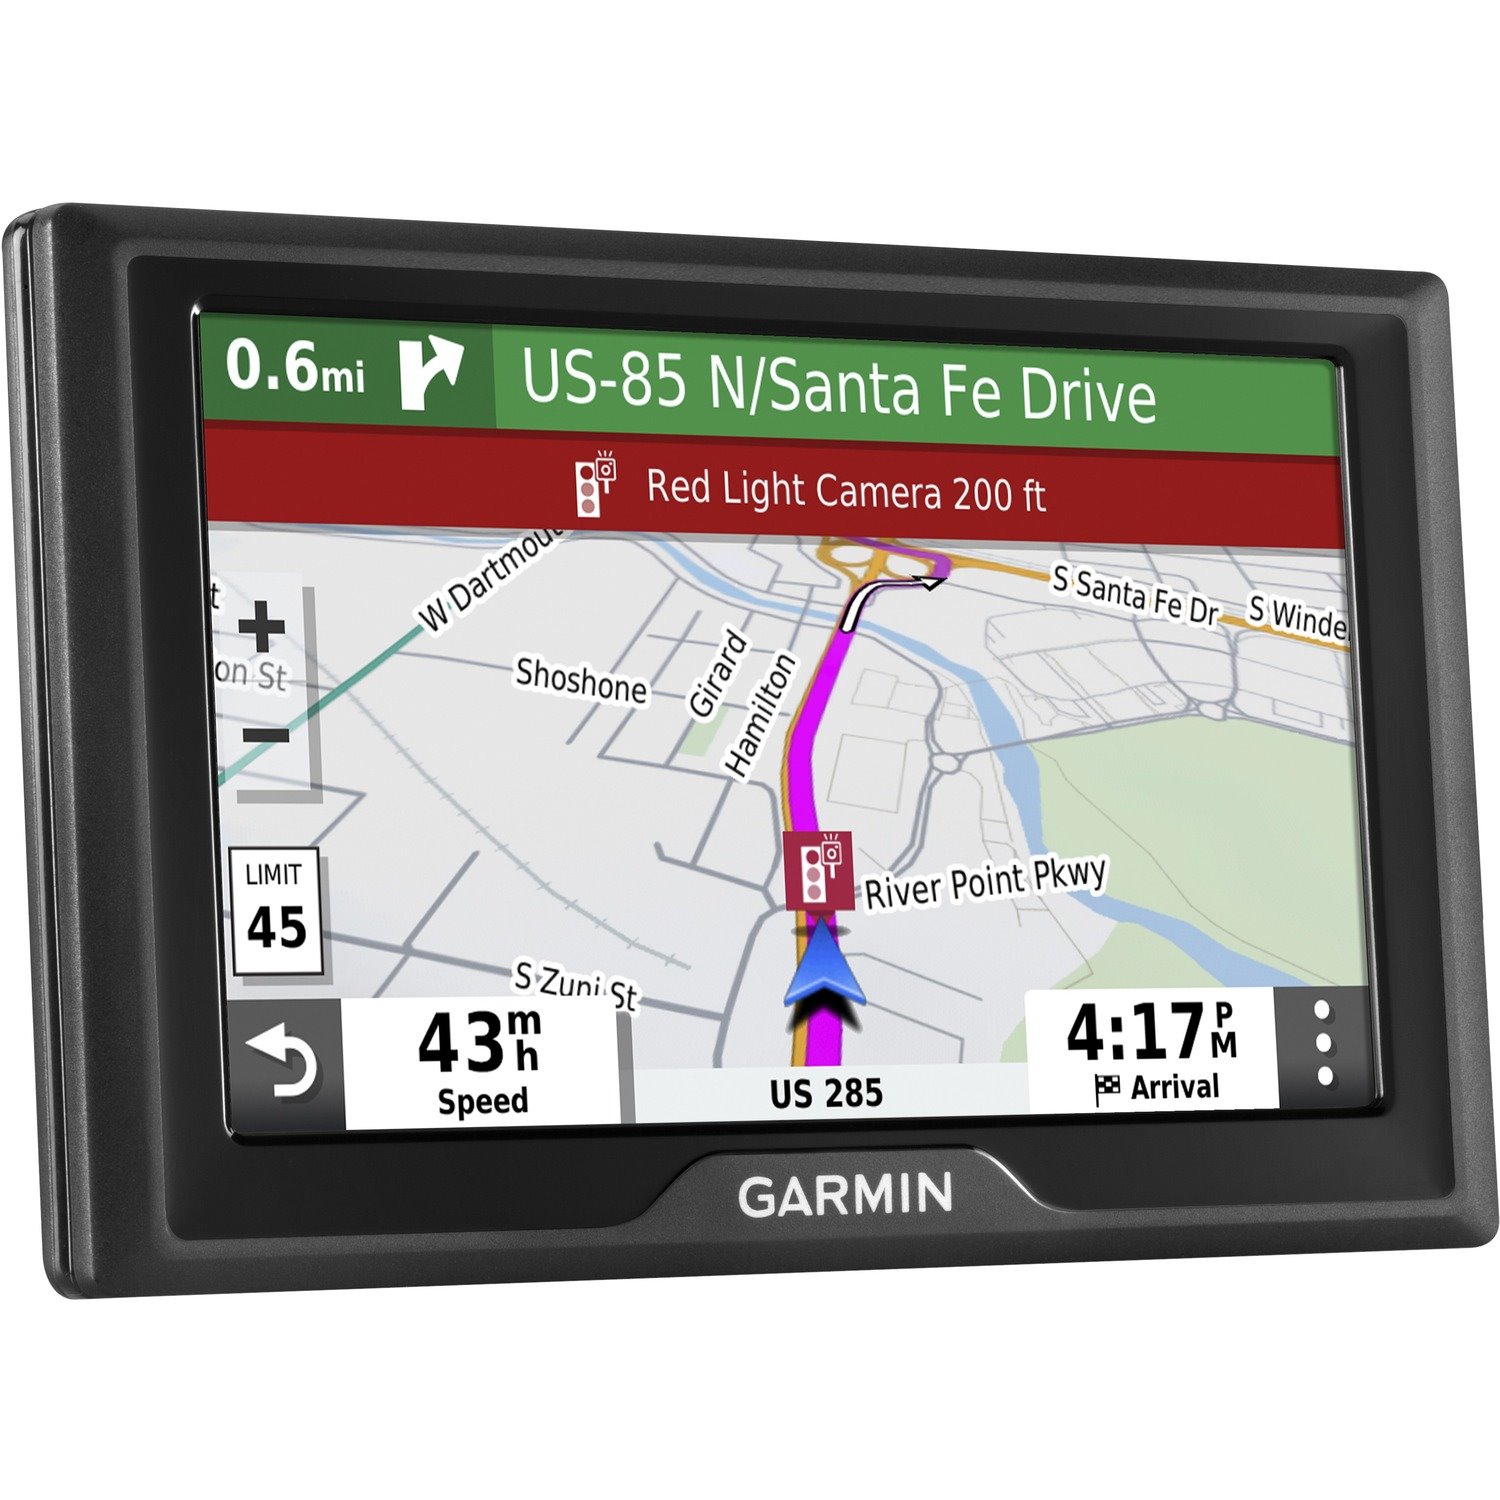 Garmin Drive 52 Automobile Portable GPS Navigator - Portable, Mountable